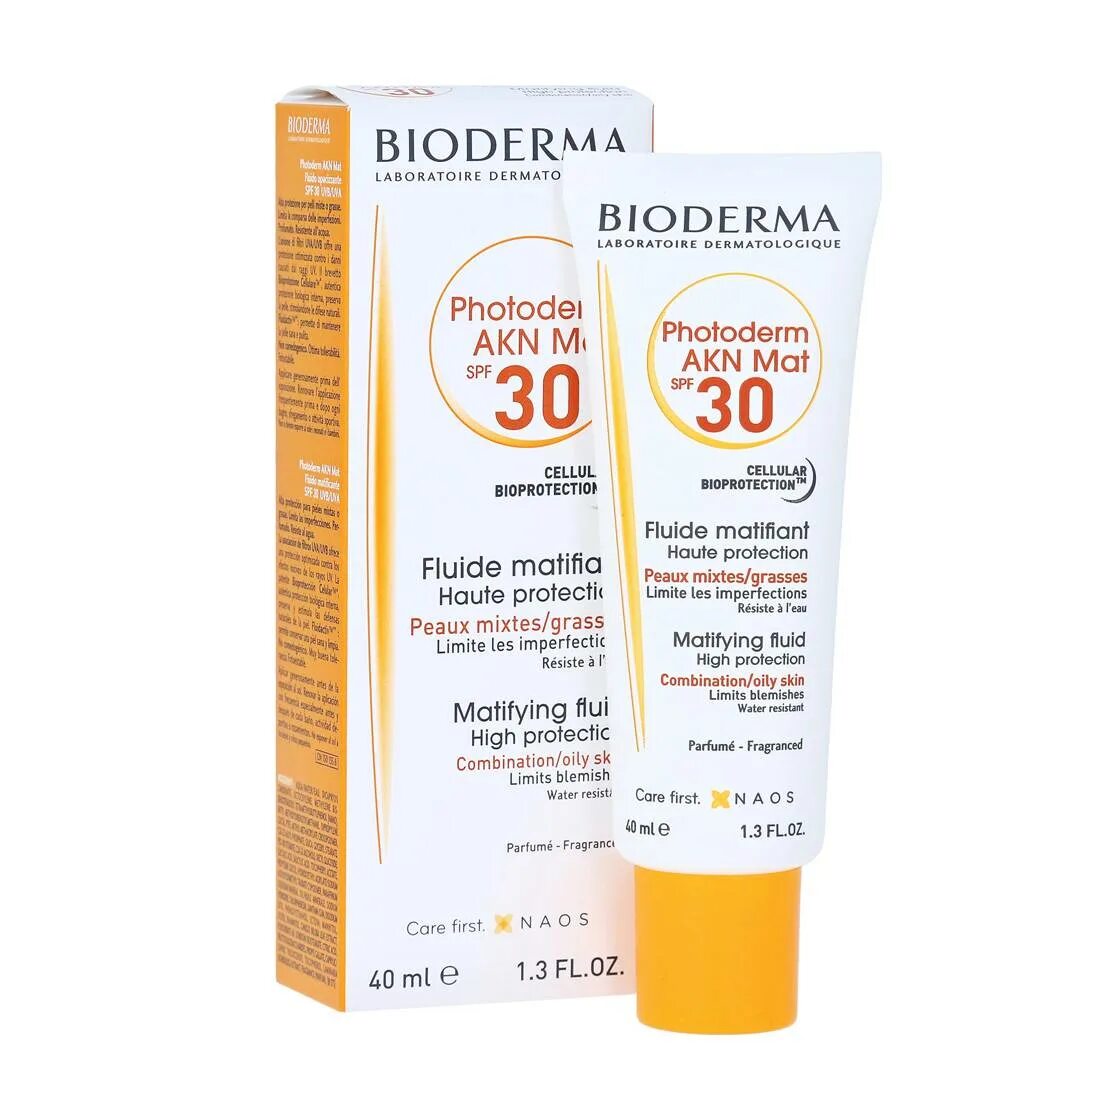 Bioderma Photoderm AKN СПФ. Bioderma SPF 50 для жирной проблемной кожи. Биодерма крем СПФ 30.